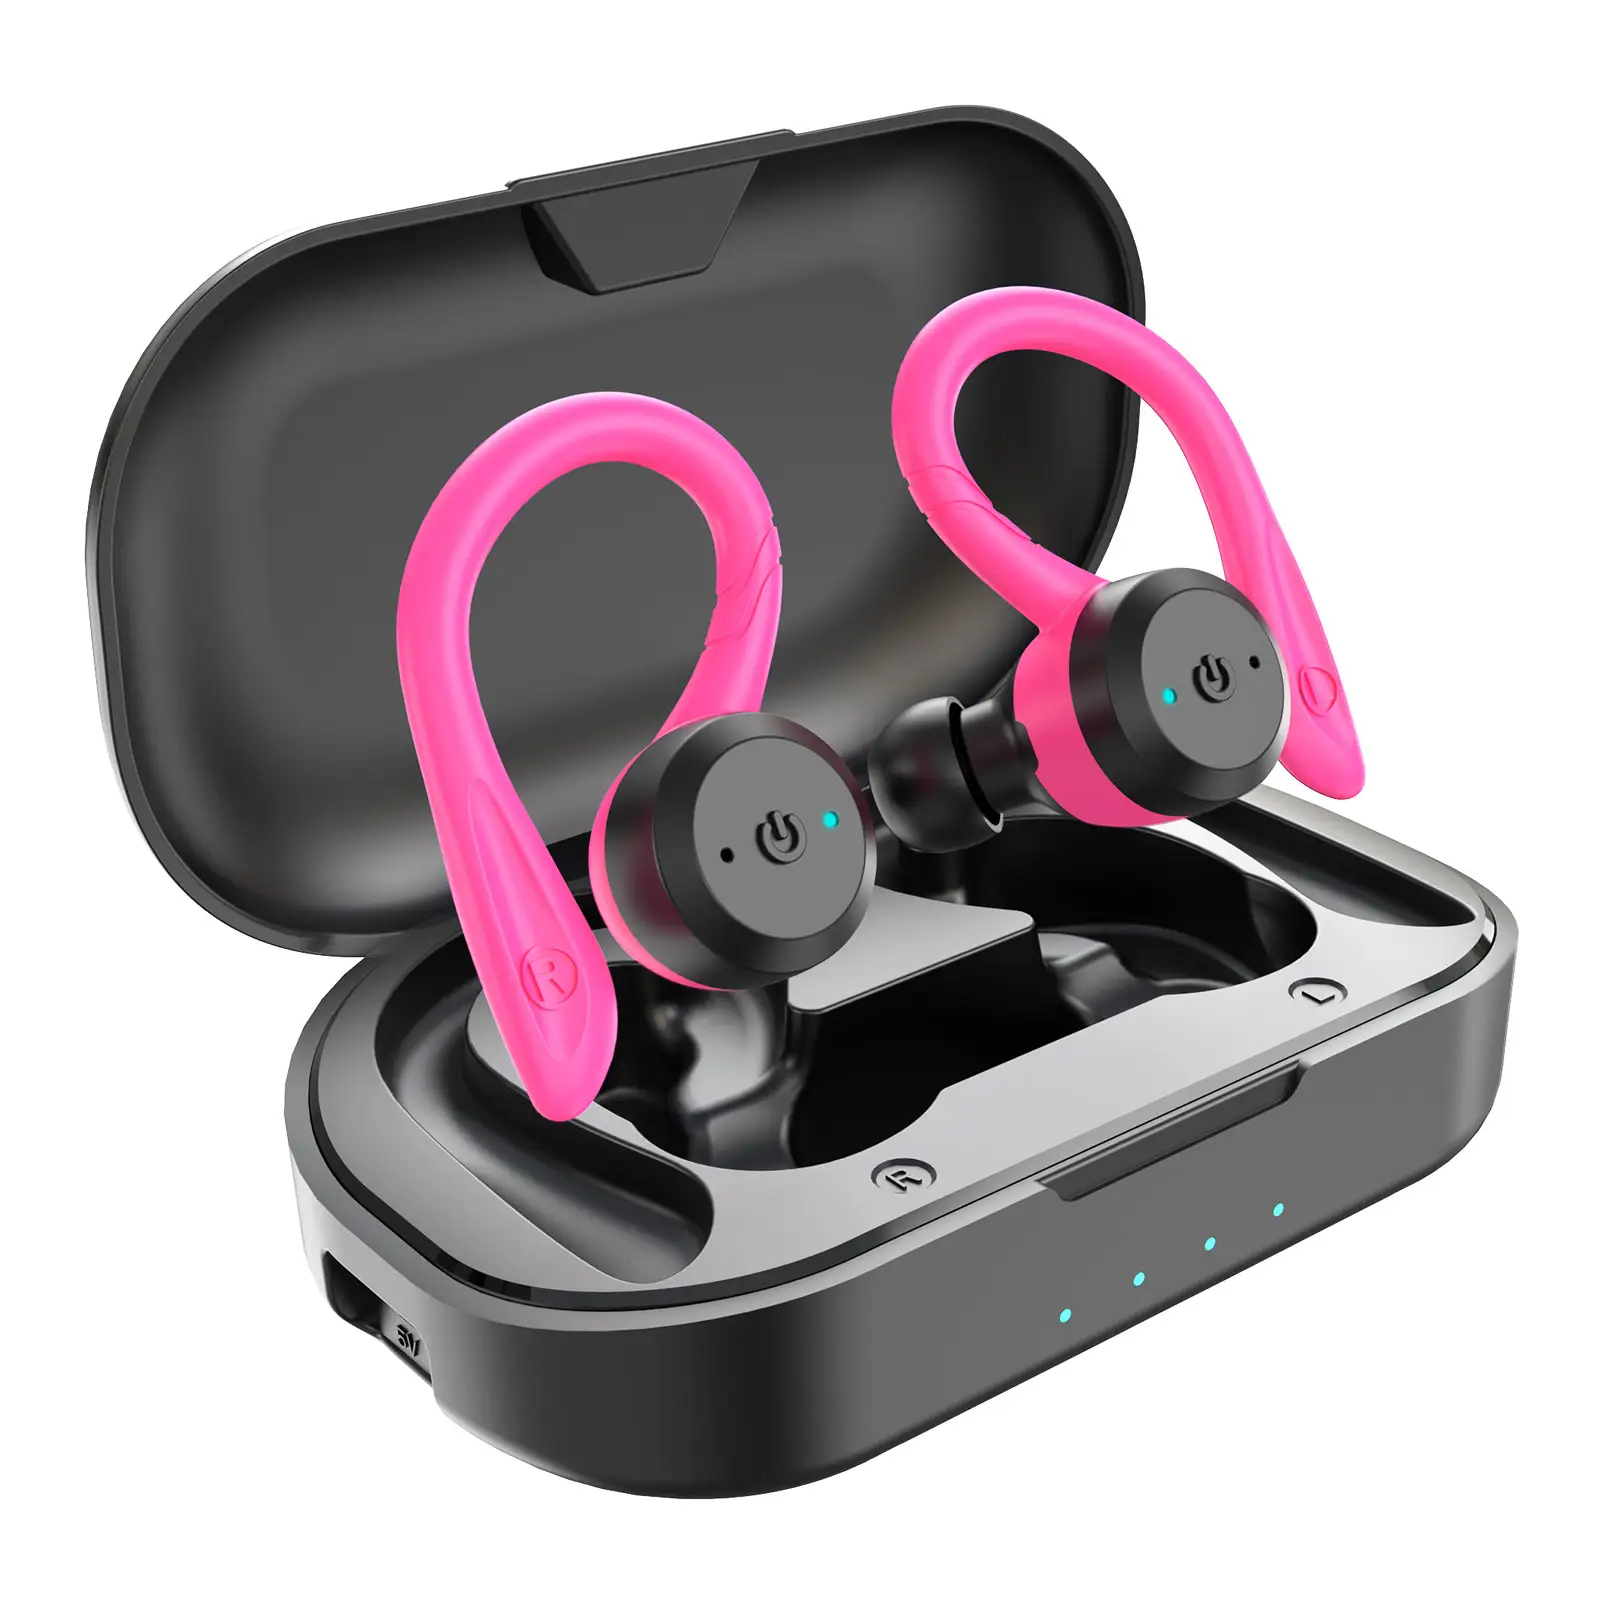 IPod için profesyonel gerçek IPX7 su geçirmez kablosuz kulaklık akıllı Stereo ses Bluetooth kulaklık TWS kulaklık spor kulaklıklar